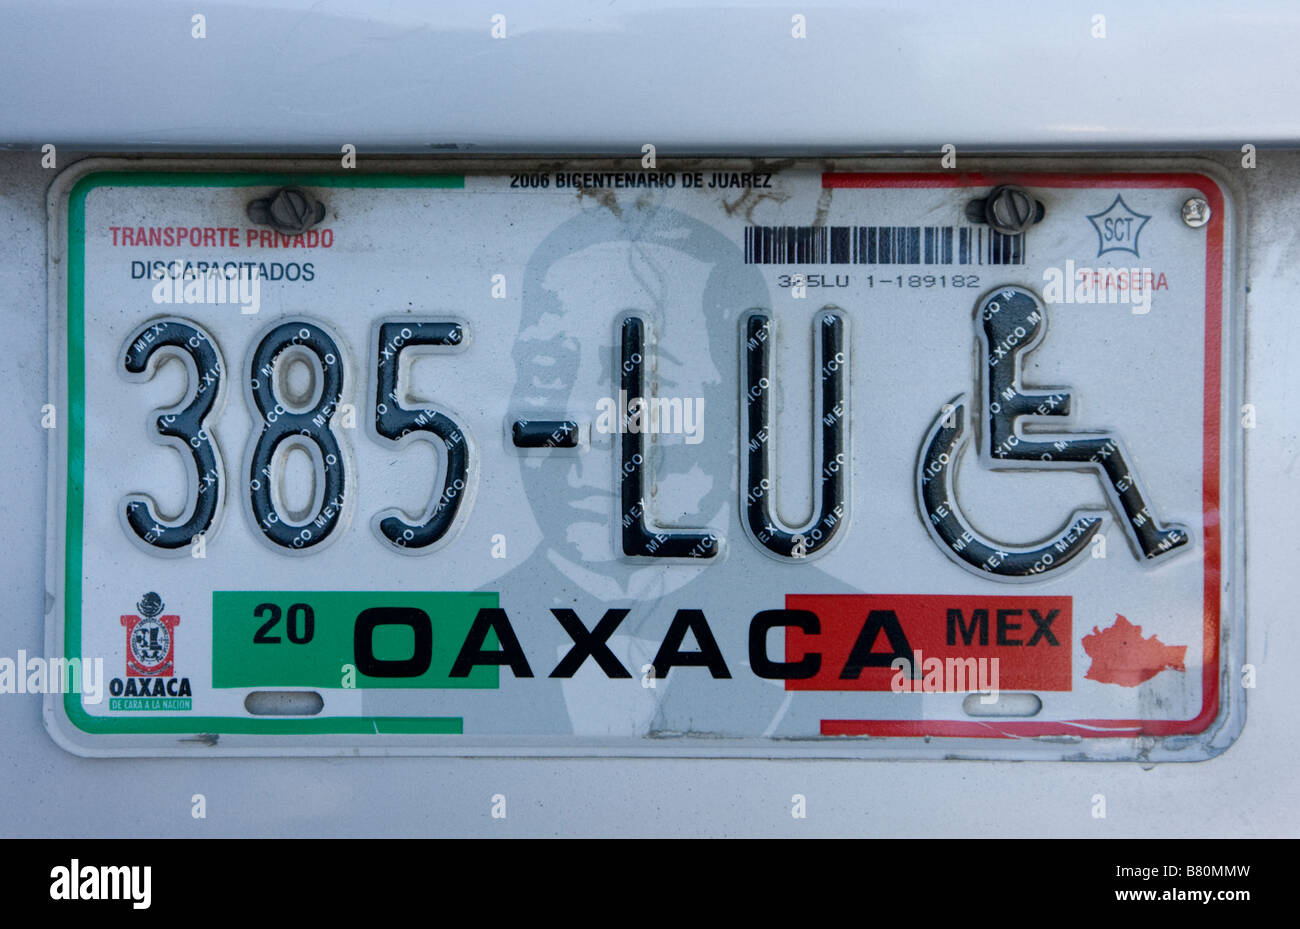 Oaxaca, Mexique. La plaque d'immatriculation automobile privé, Etat de Oaxaca, montrant emblème pour handicapés ou personnes à mobilité réduite Parking Privilège. Image Benito Juarez. Banque D'Images